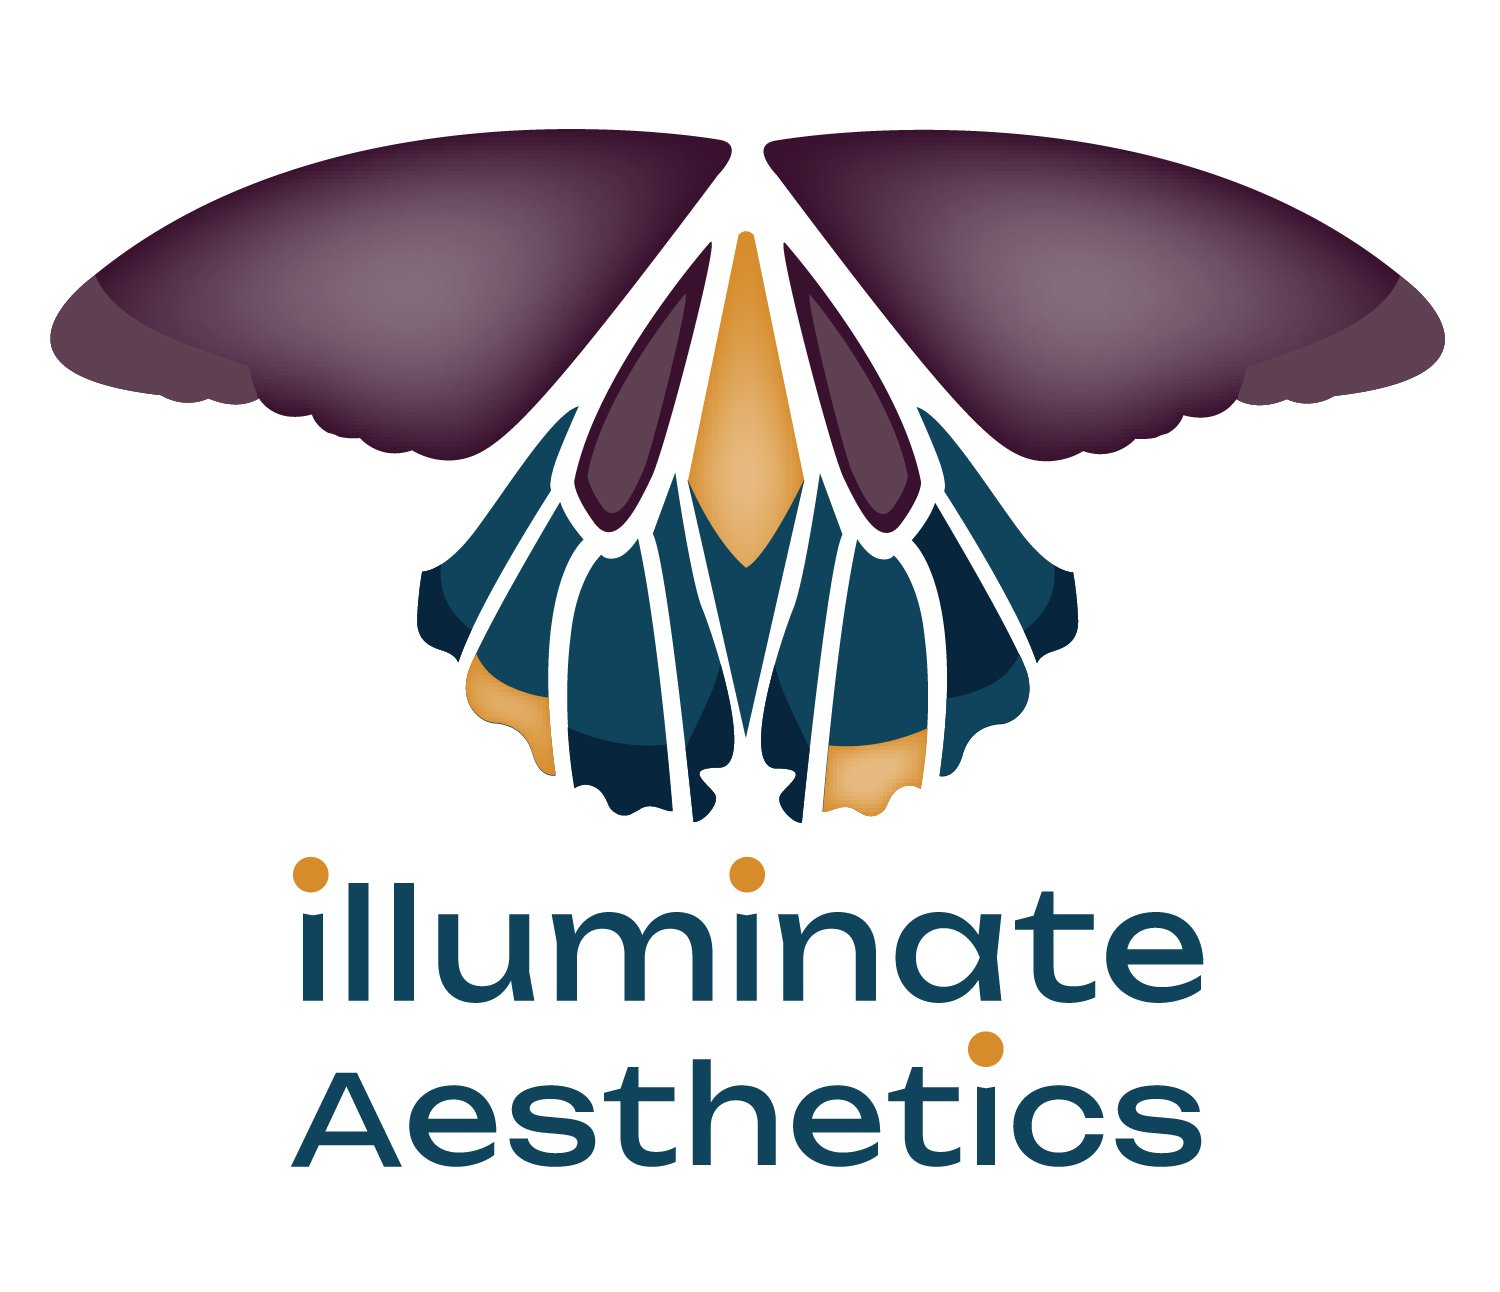 Illuminate Aesthetics